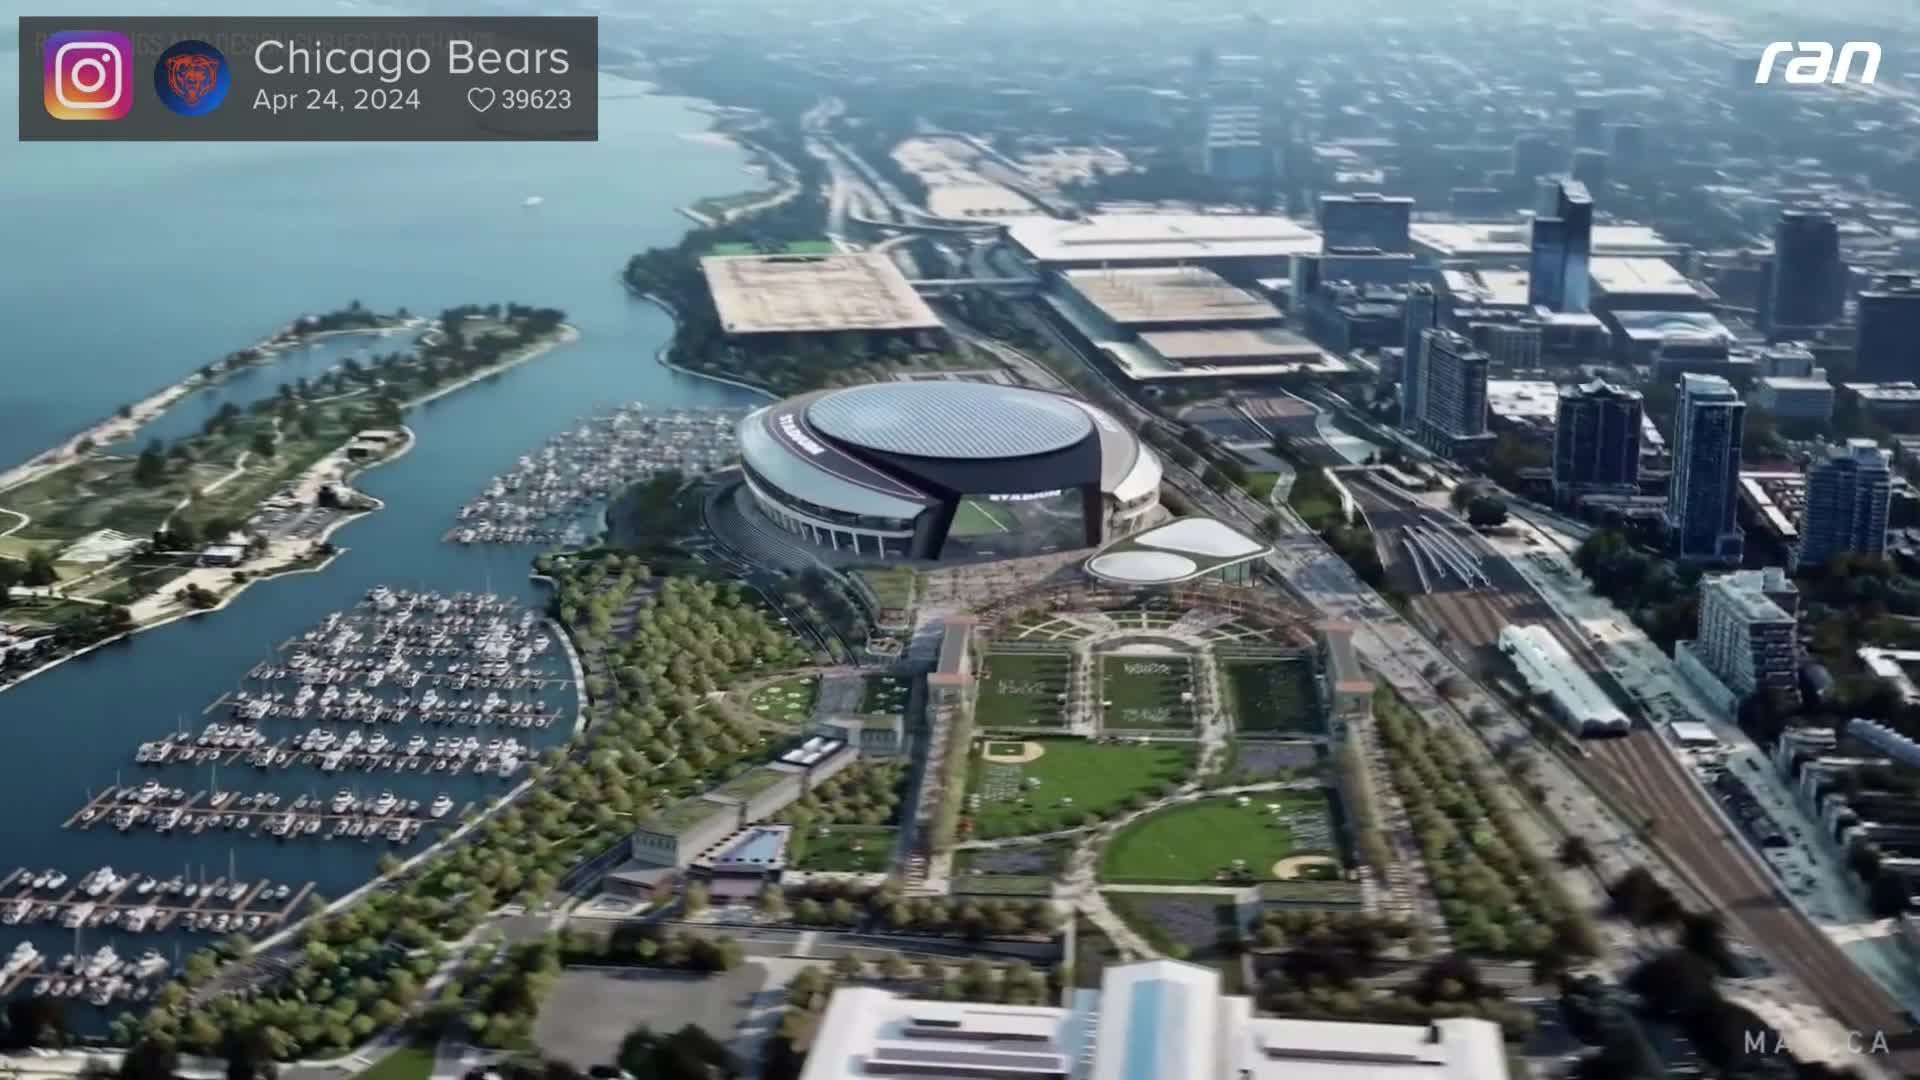 NFL-Stadion vorgestellt: So soll die Bears-Heimstätte aussehen